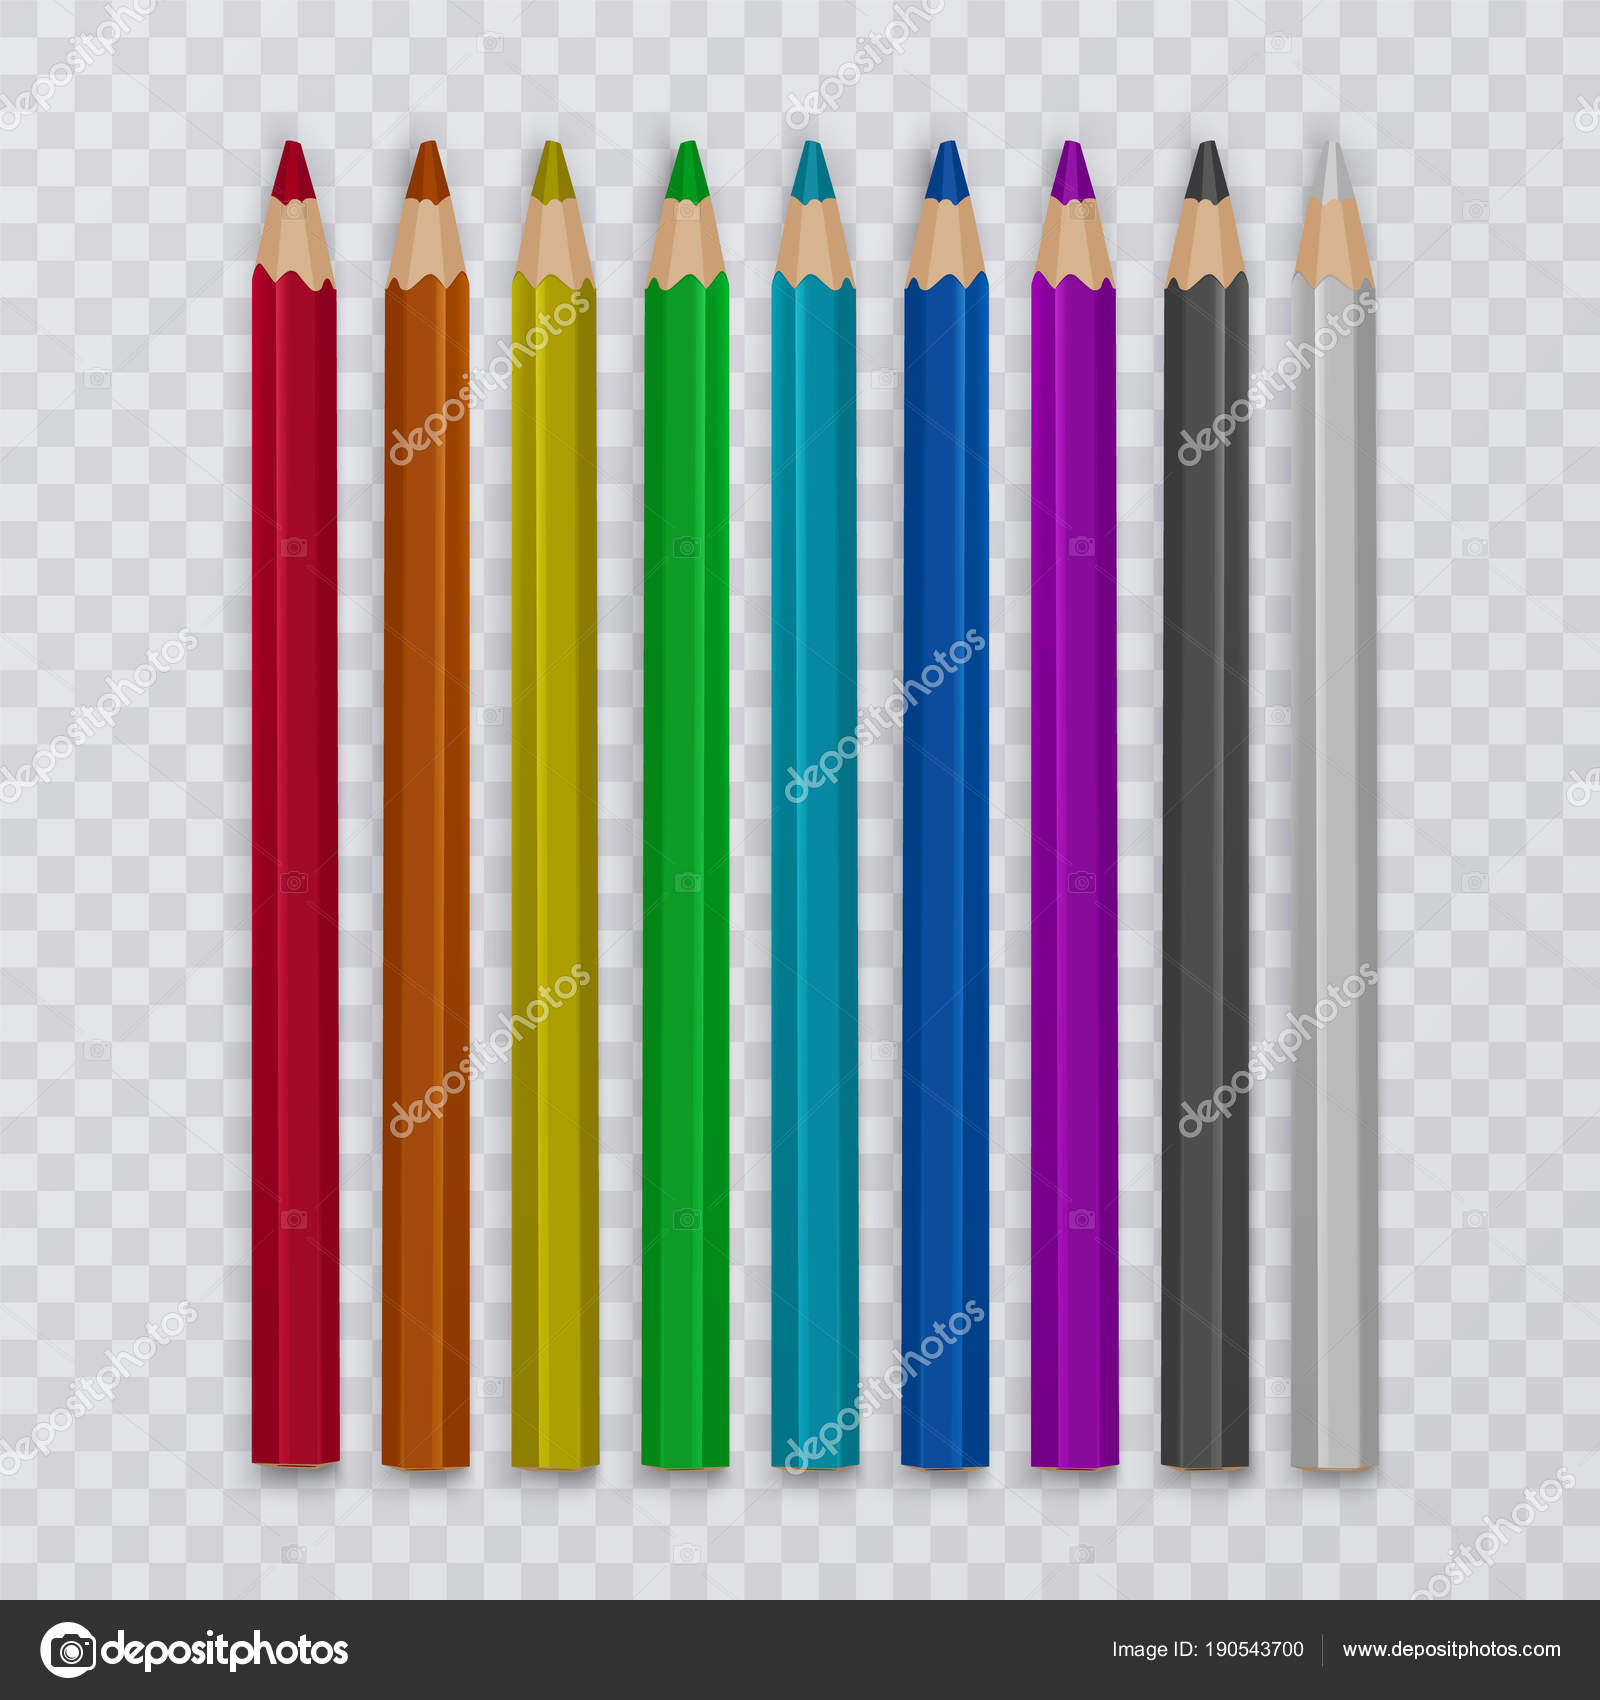 Conjunto De Lápices De Colores Para Dibujar. Eps10 Ilustración